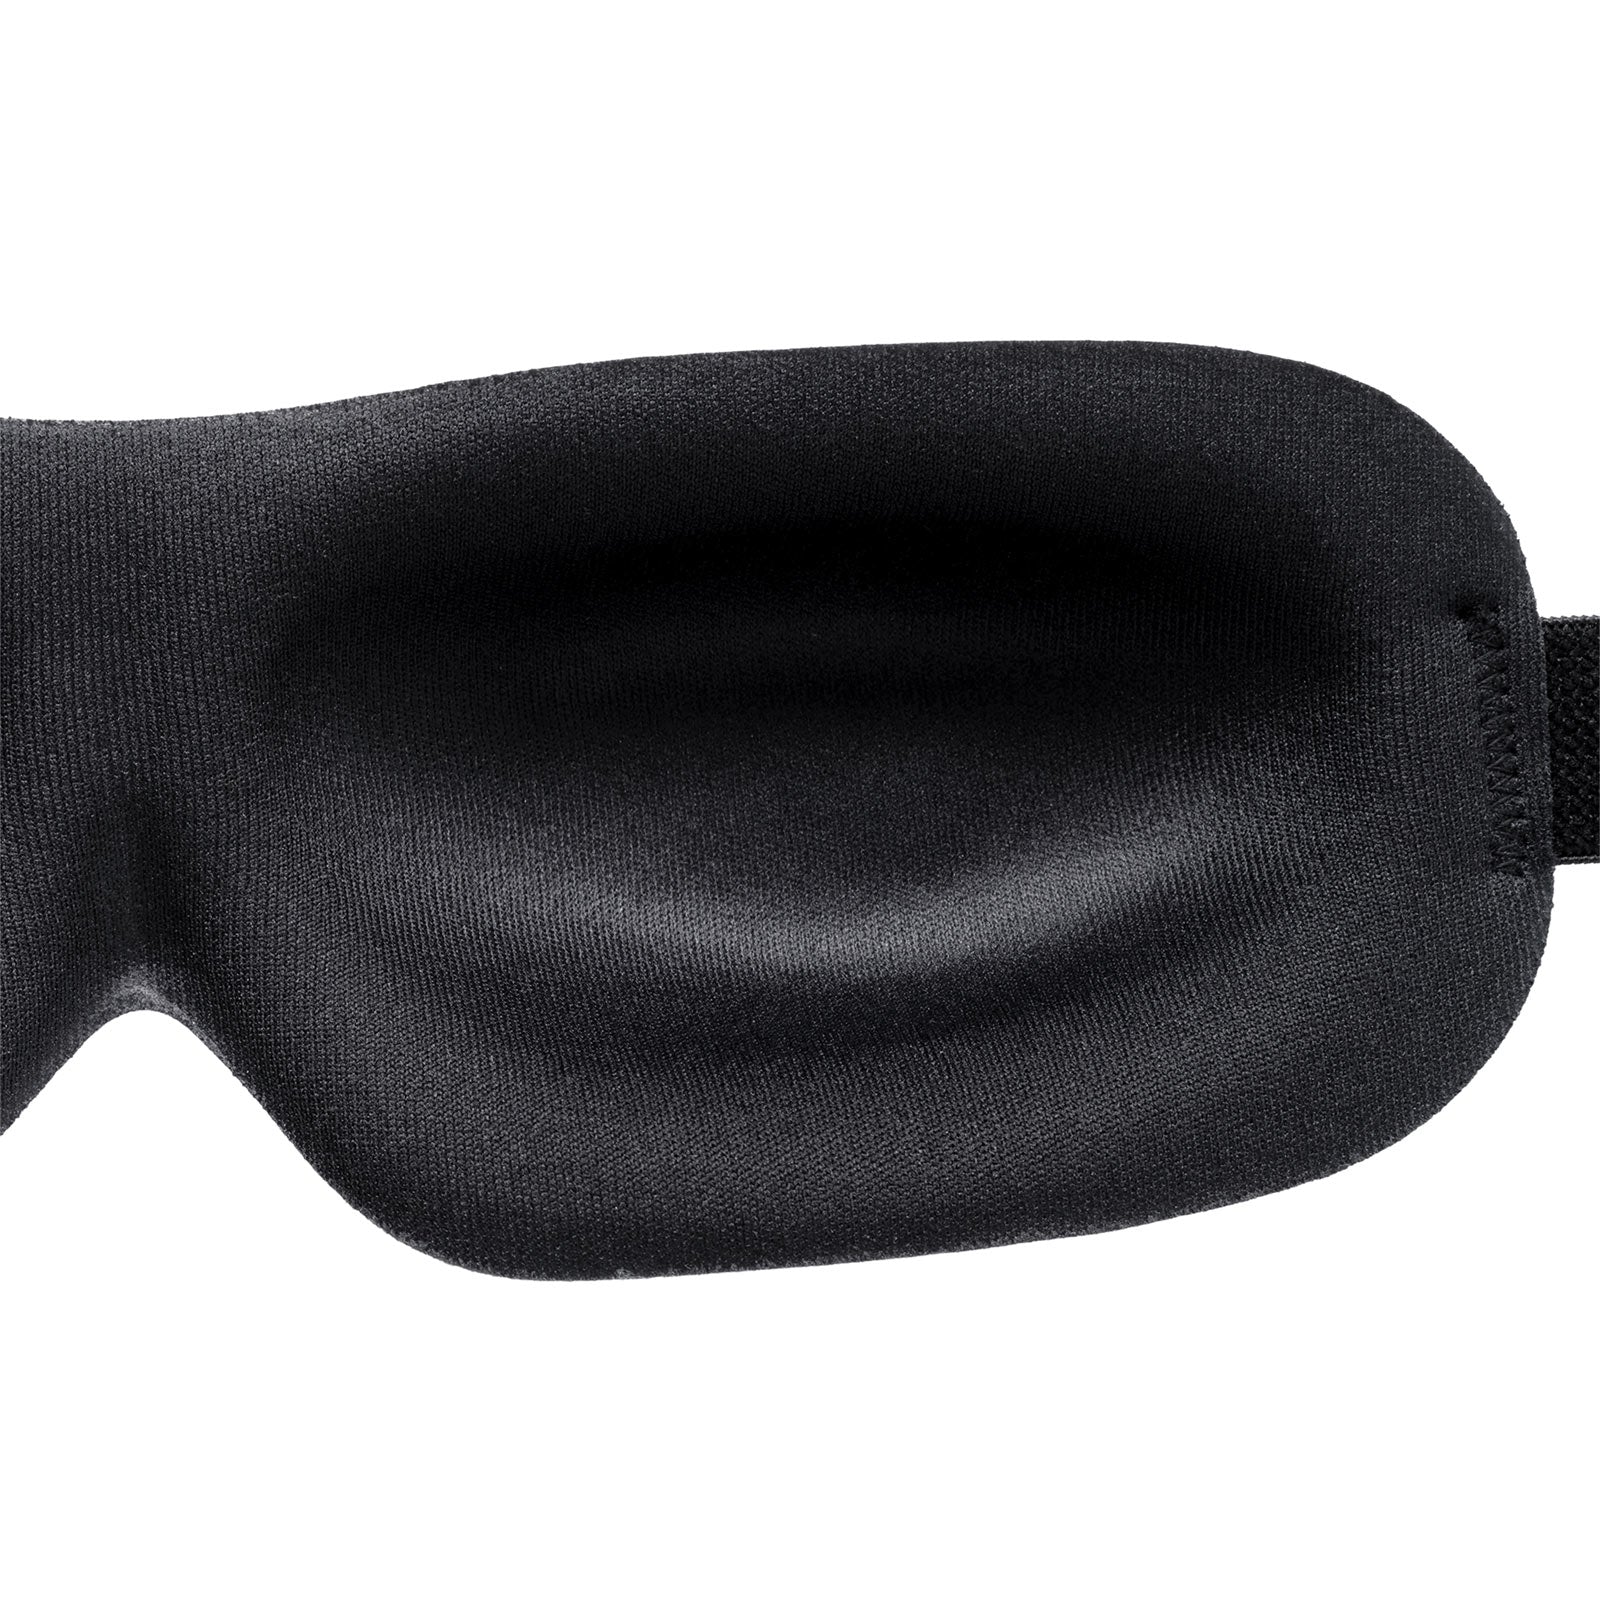 NIDRA DEEP REST EYE MASK: Luxury Sleep Mask with Contoured Shape - Black